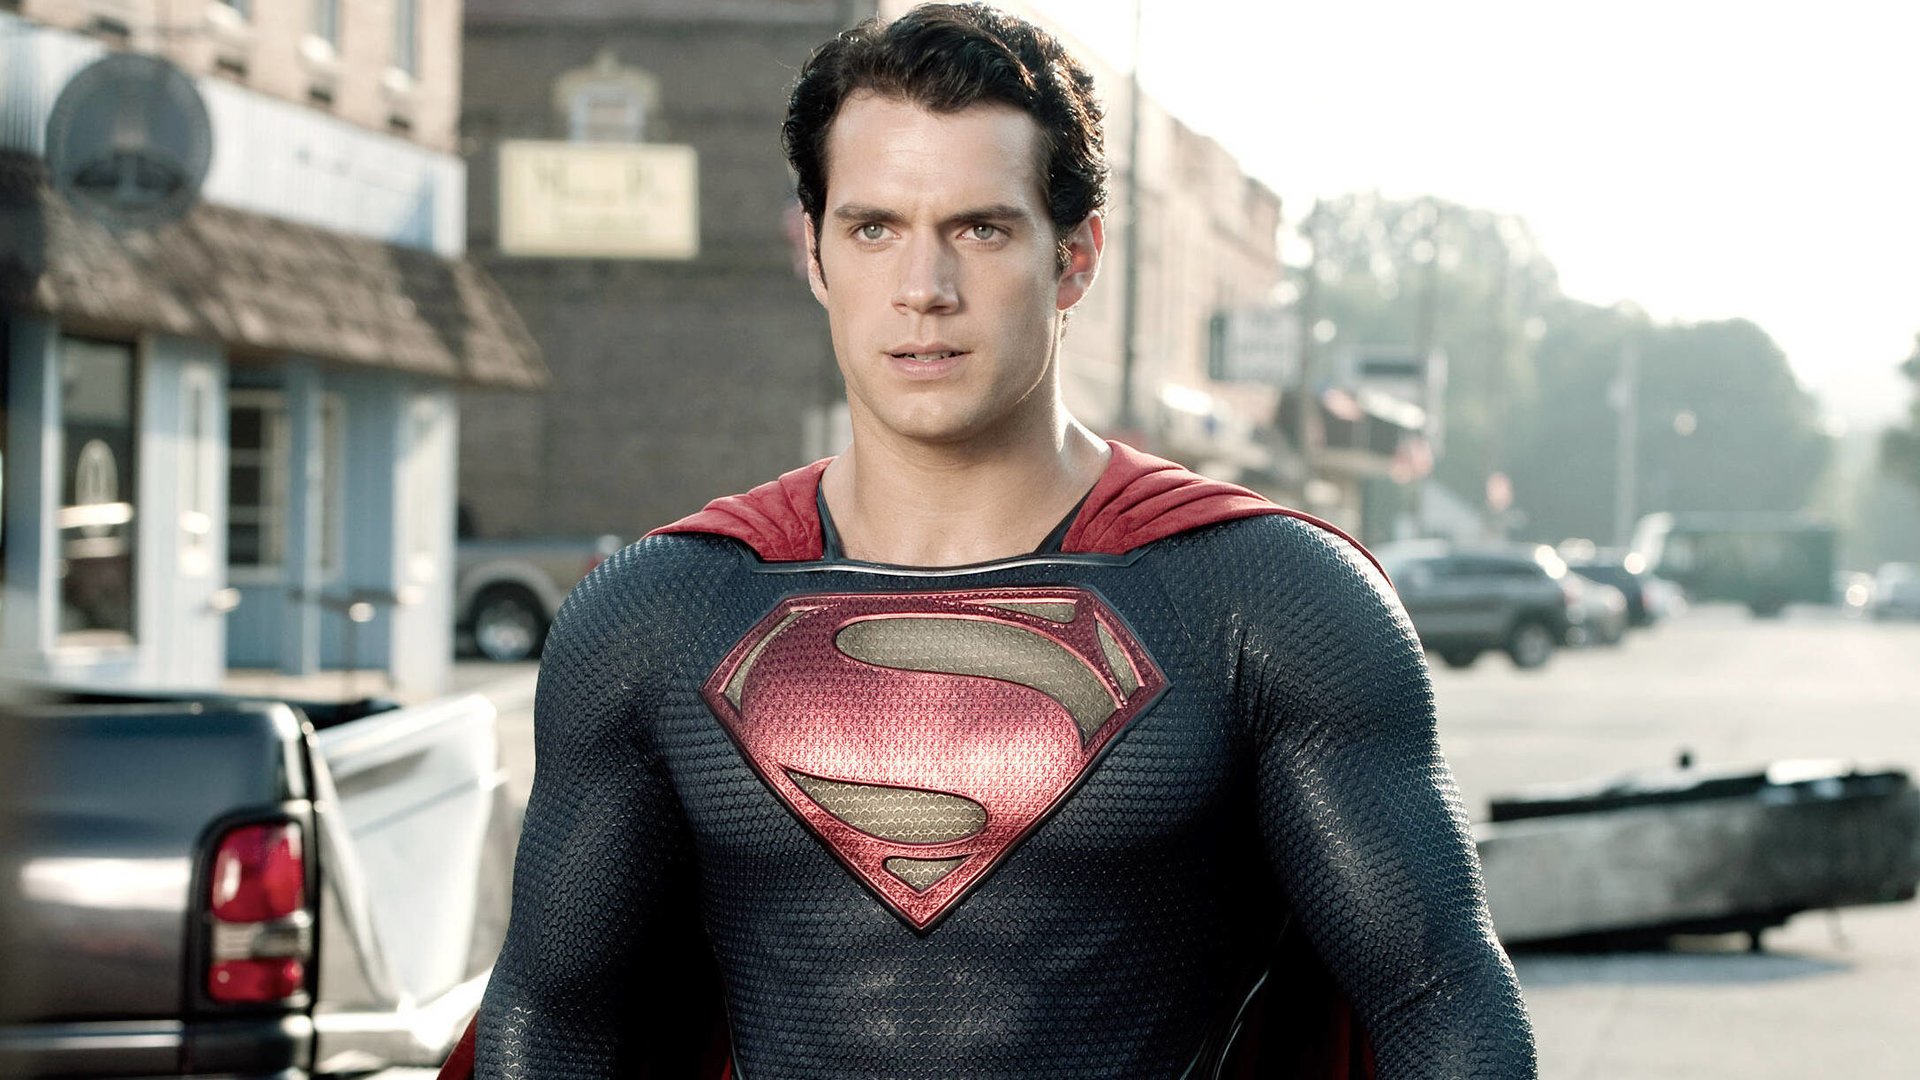 #Nicht als Superman gefeuert: DC-Studios-Chef enthüllt Wahrheit über Henry Cavills Aus